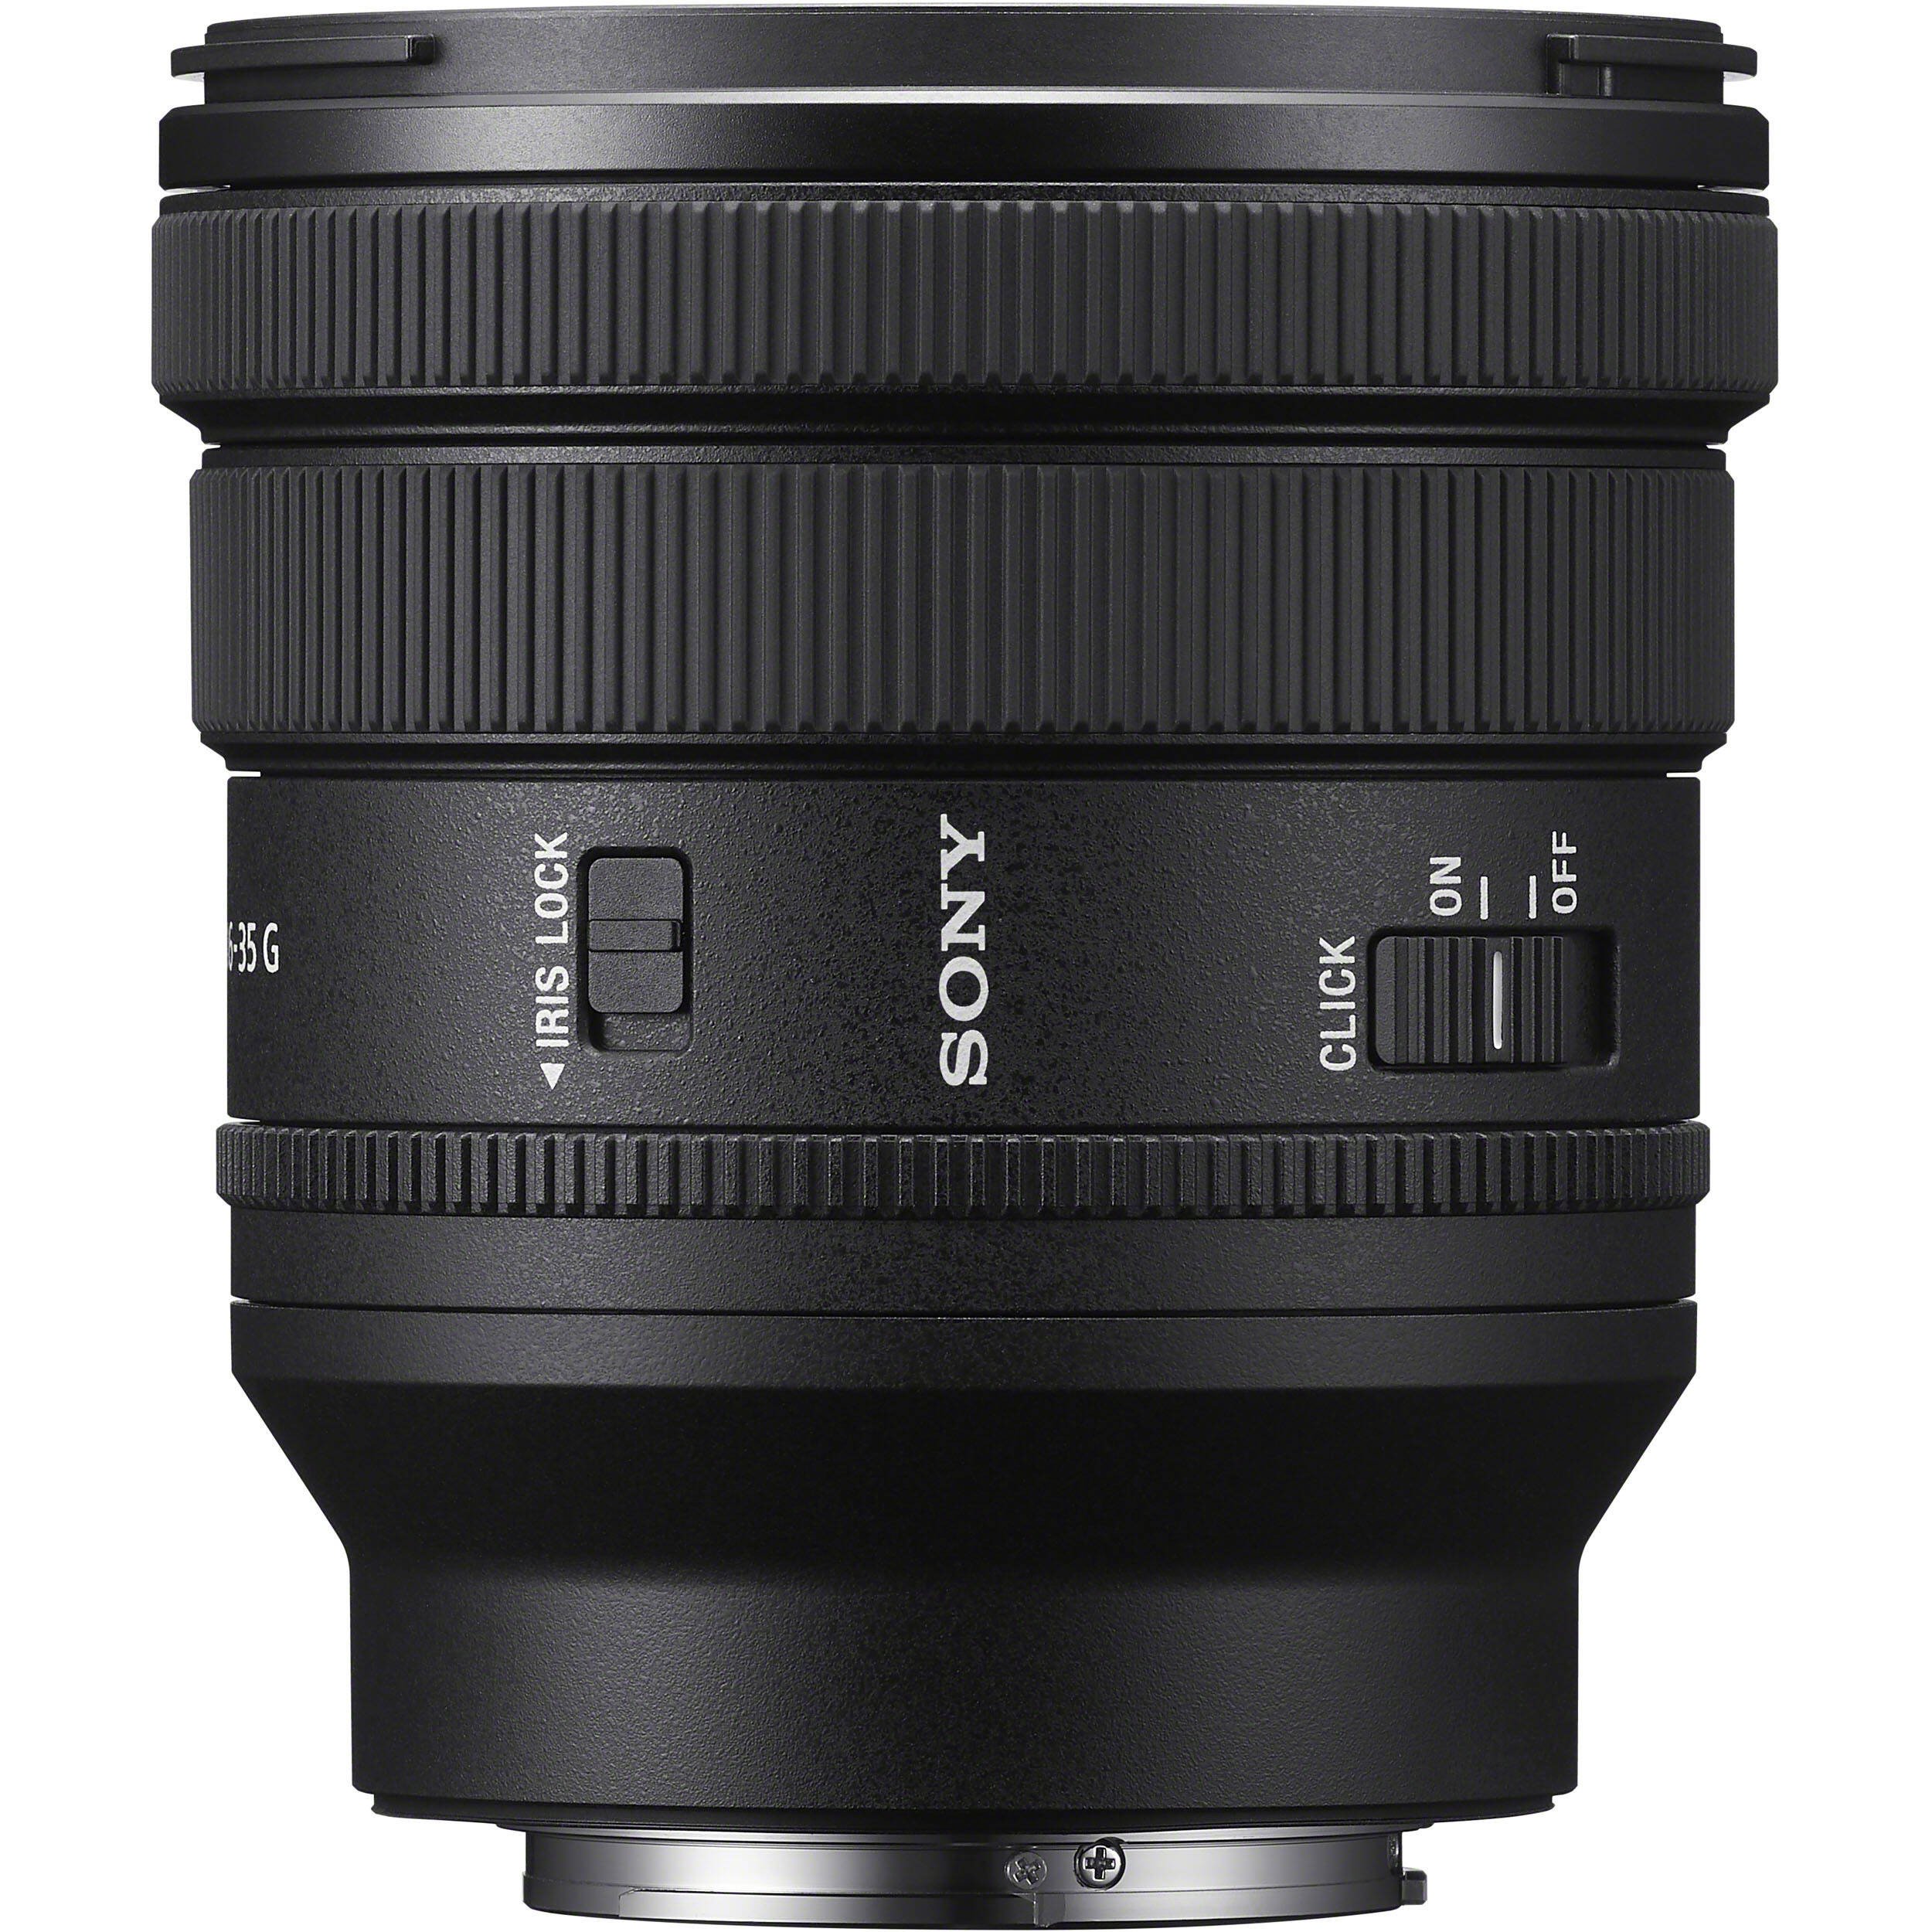 Ống kính Sony FE PZ 16-35mm f/4 G Chính Hãng, Giá Tốt - VJShop